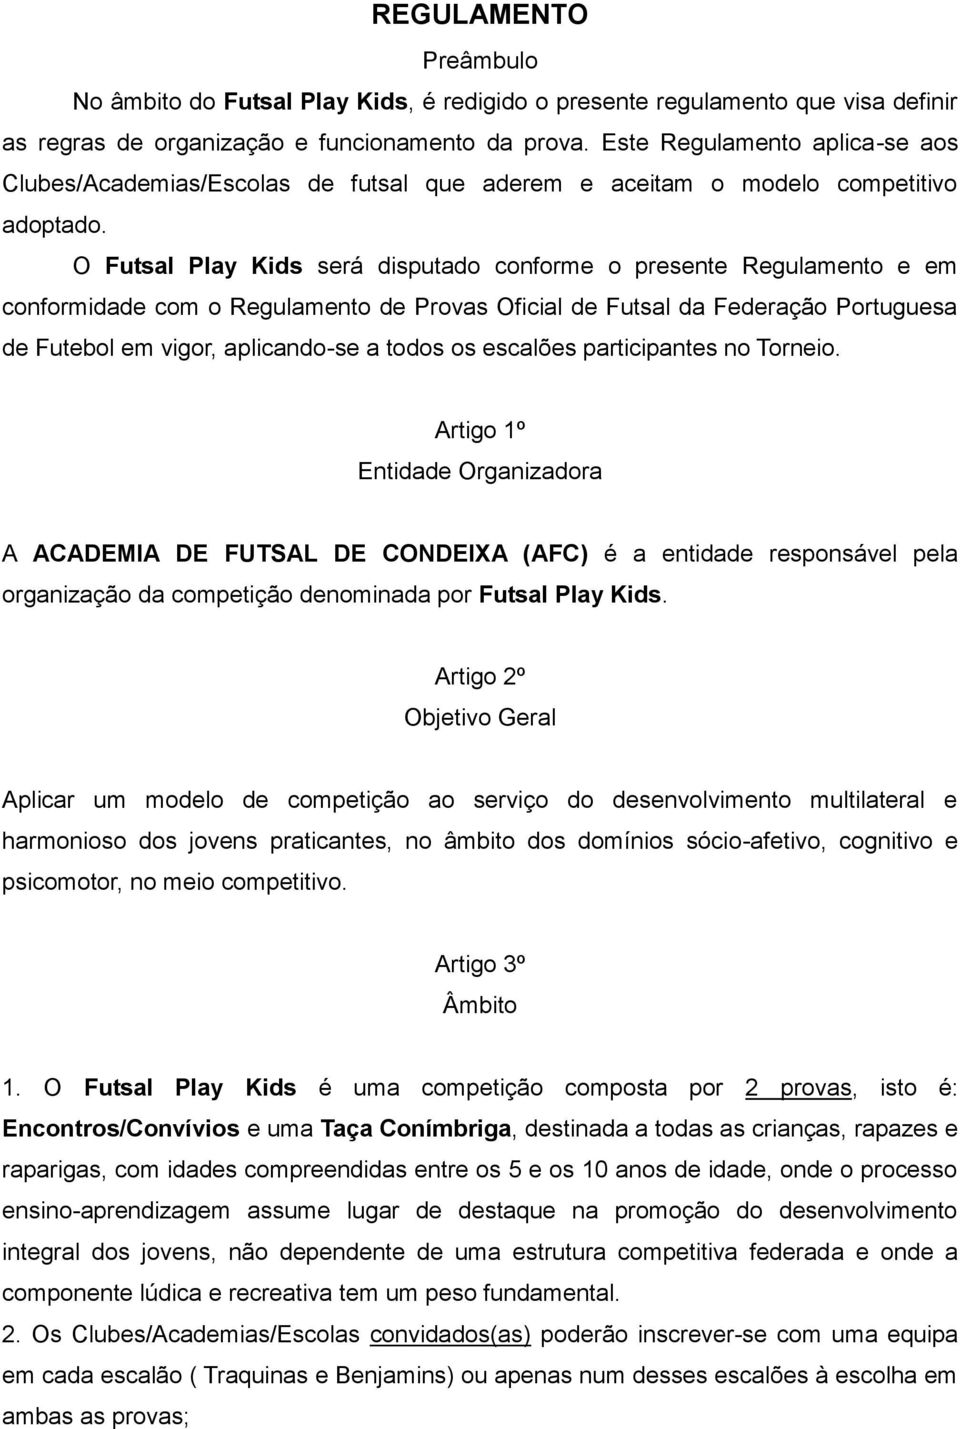 O Futsal Play Kids será disputado conforme o presente Regulamento e em conformidade com o Regulamento de Provas Oficial de Futsal da Federação Portuguesa de Futebol em vigor, aplicando-se a todos os